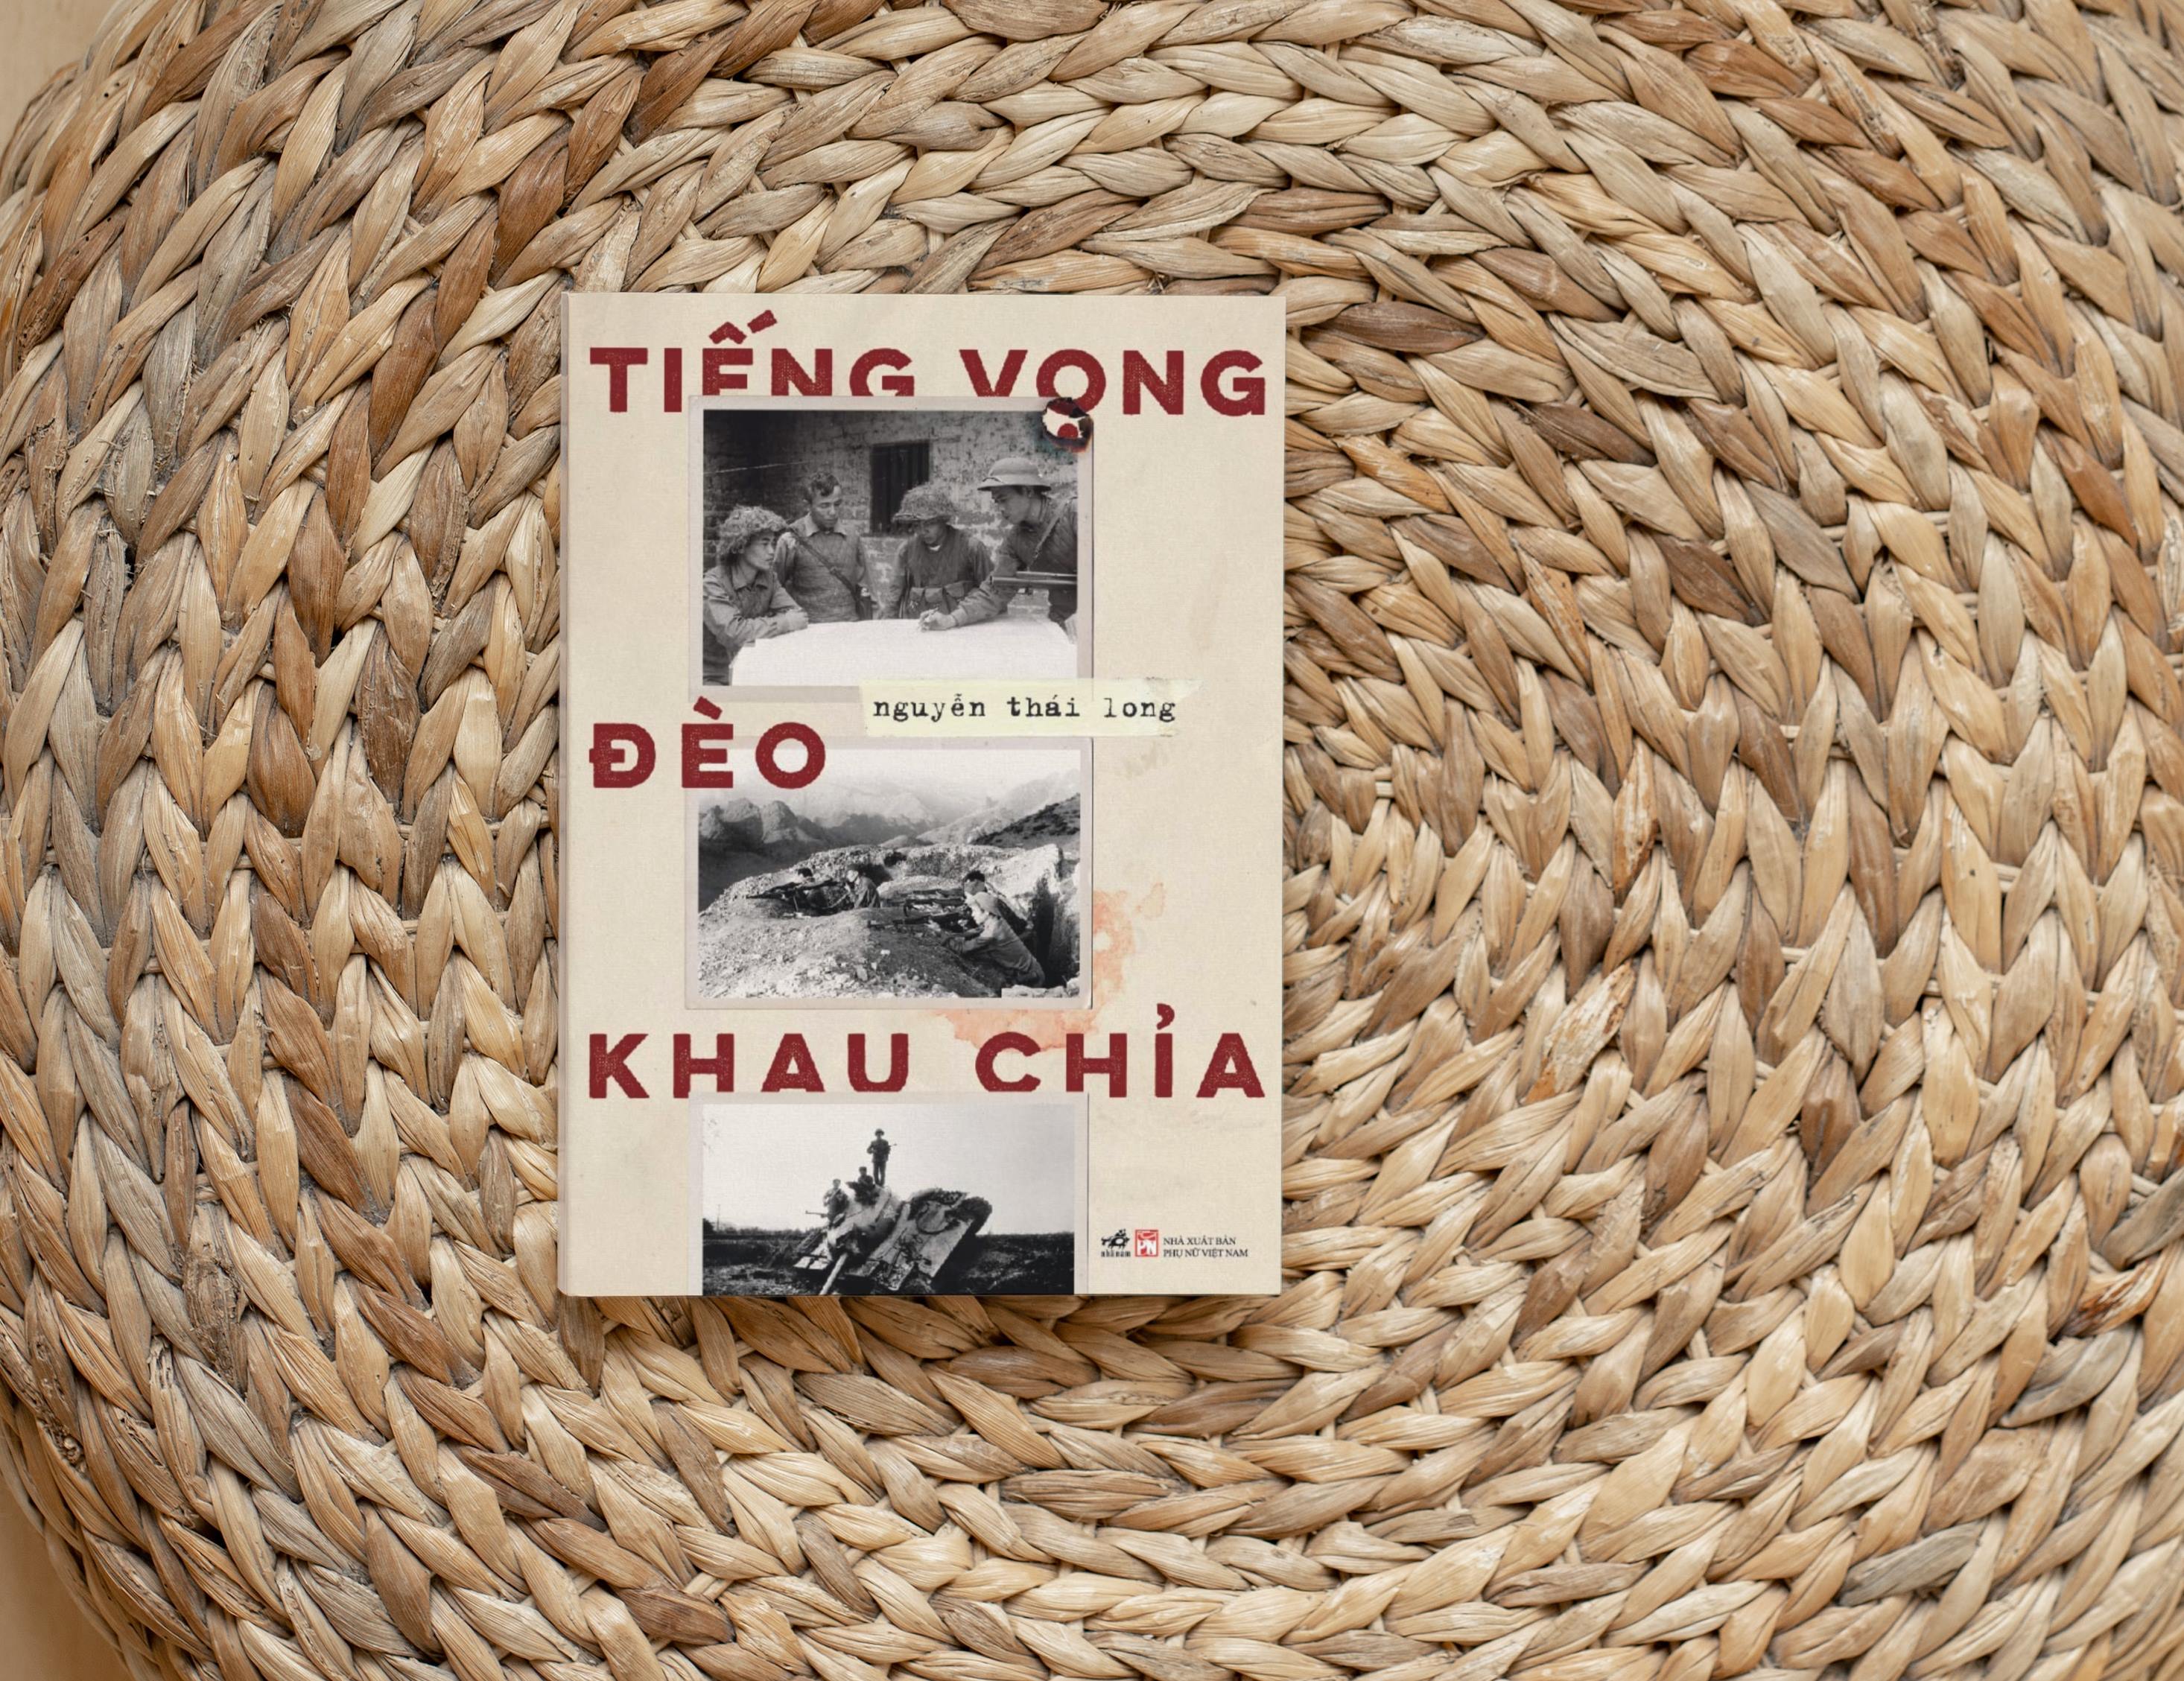 Trò chuyện về cuốn sách “Tiếng vọng đèo Khau Chỉa”: Ký ức của người lính về cuộc chiến bảo vệ biên cương phía Bắc - 2